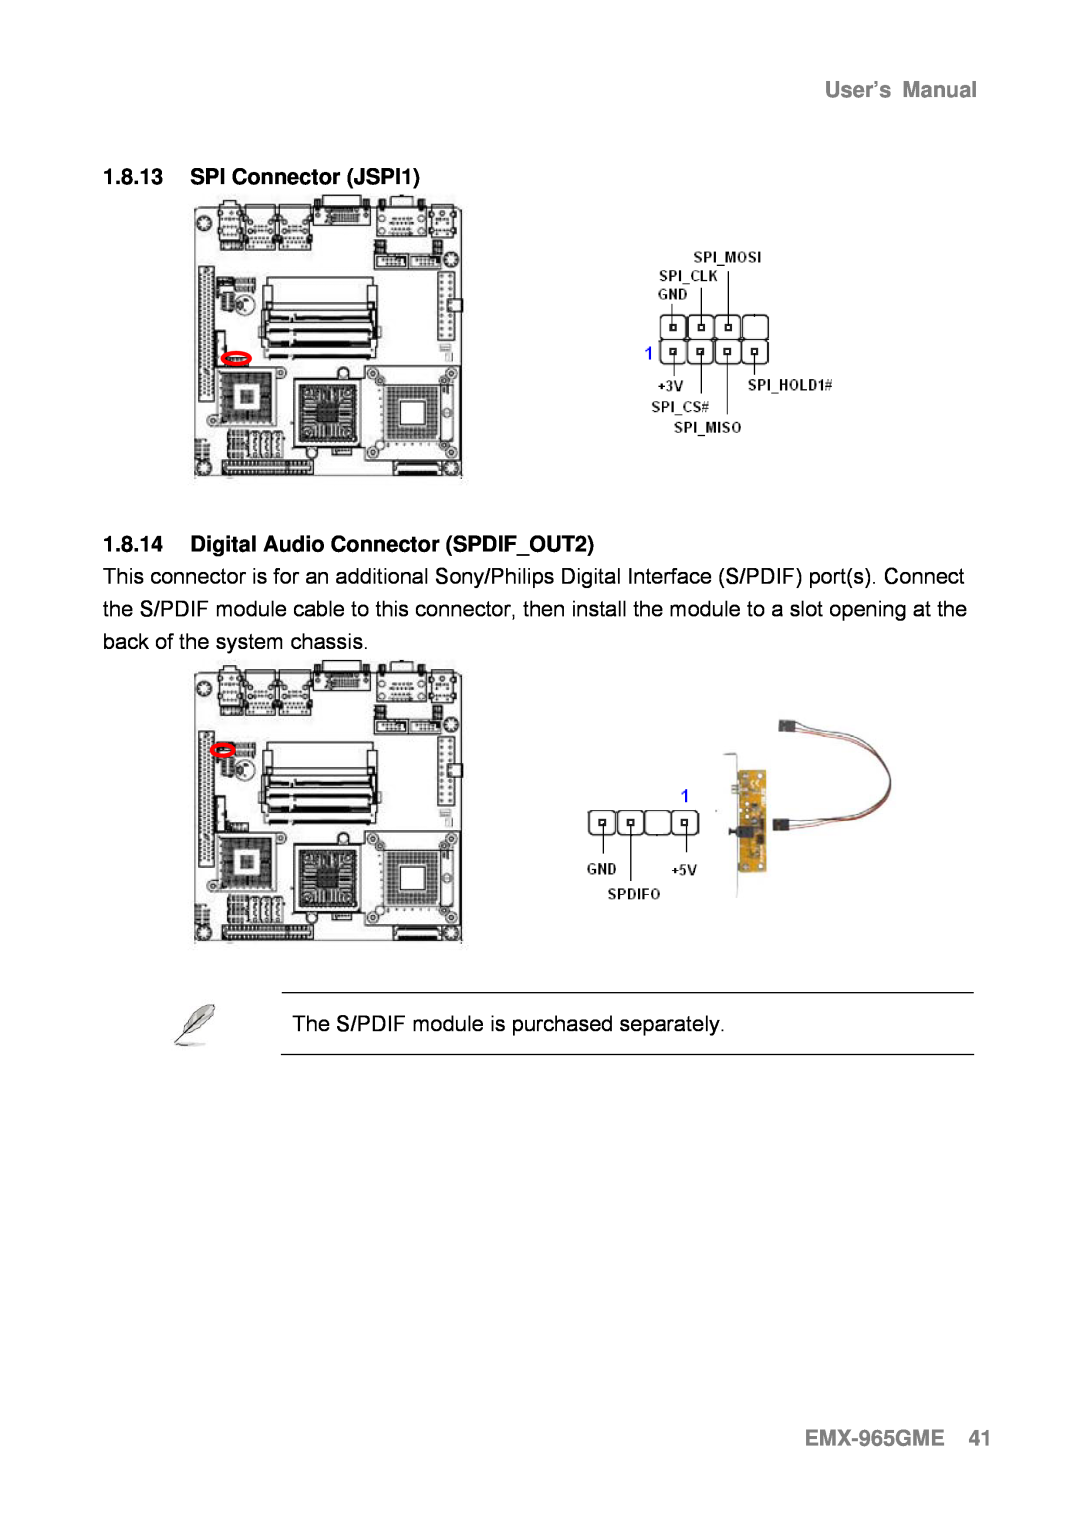 Intel user manual 1.8.13SPI Connector JSPI1, 1.8.14Digital Audio Connector SPDIF_OUT2, EMX-965GME41, User’s Manual 